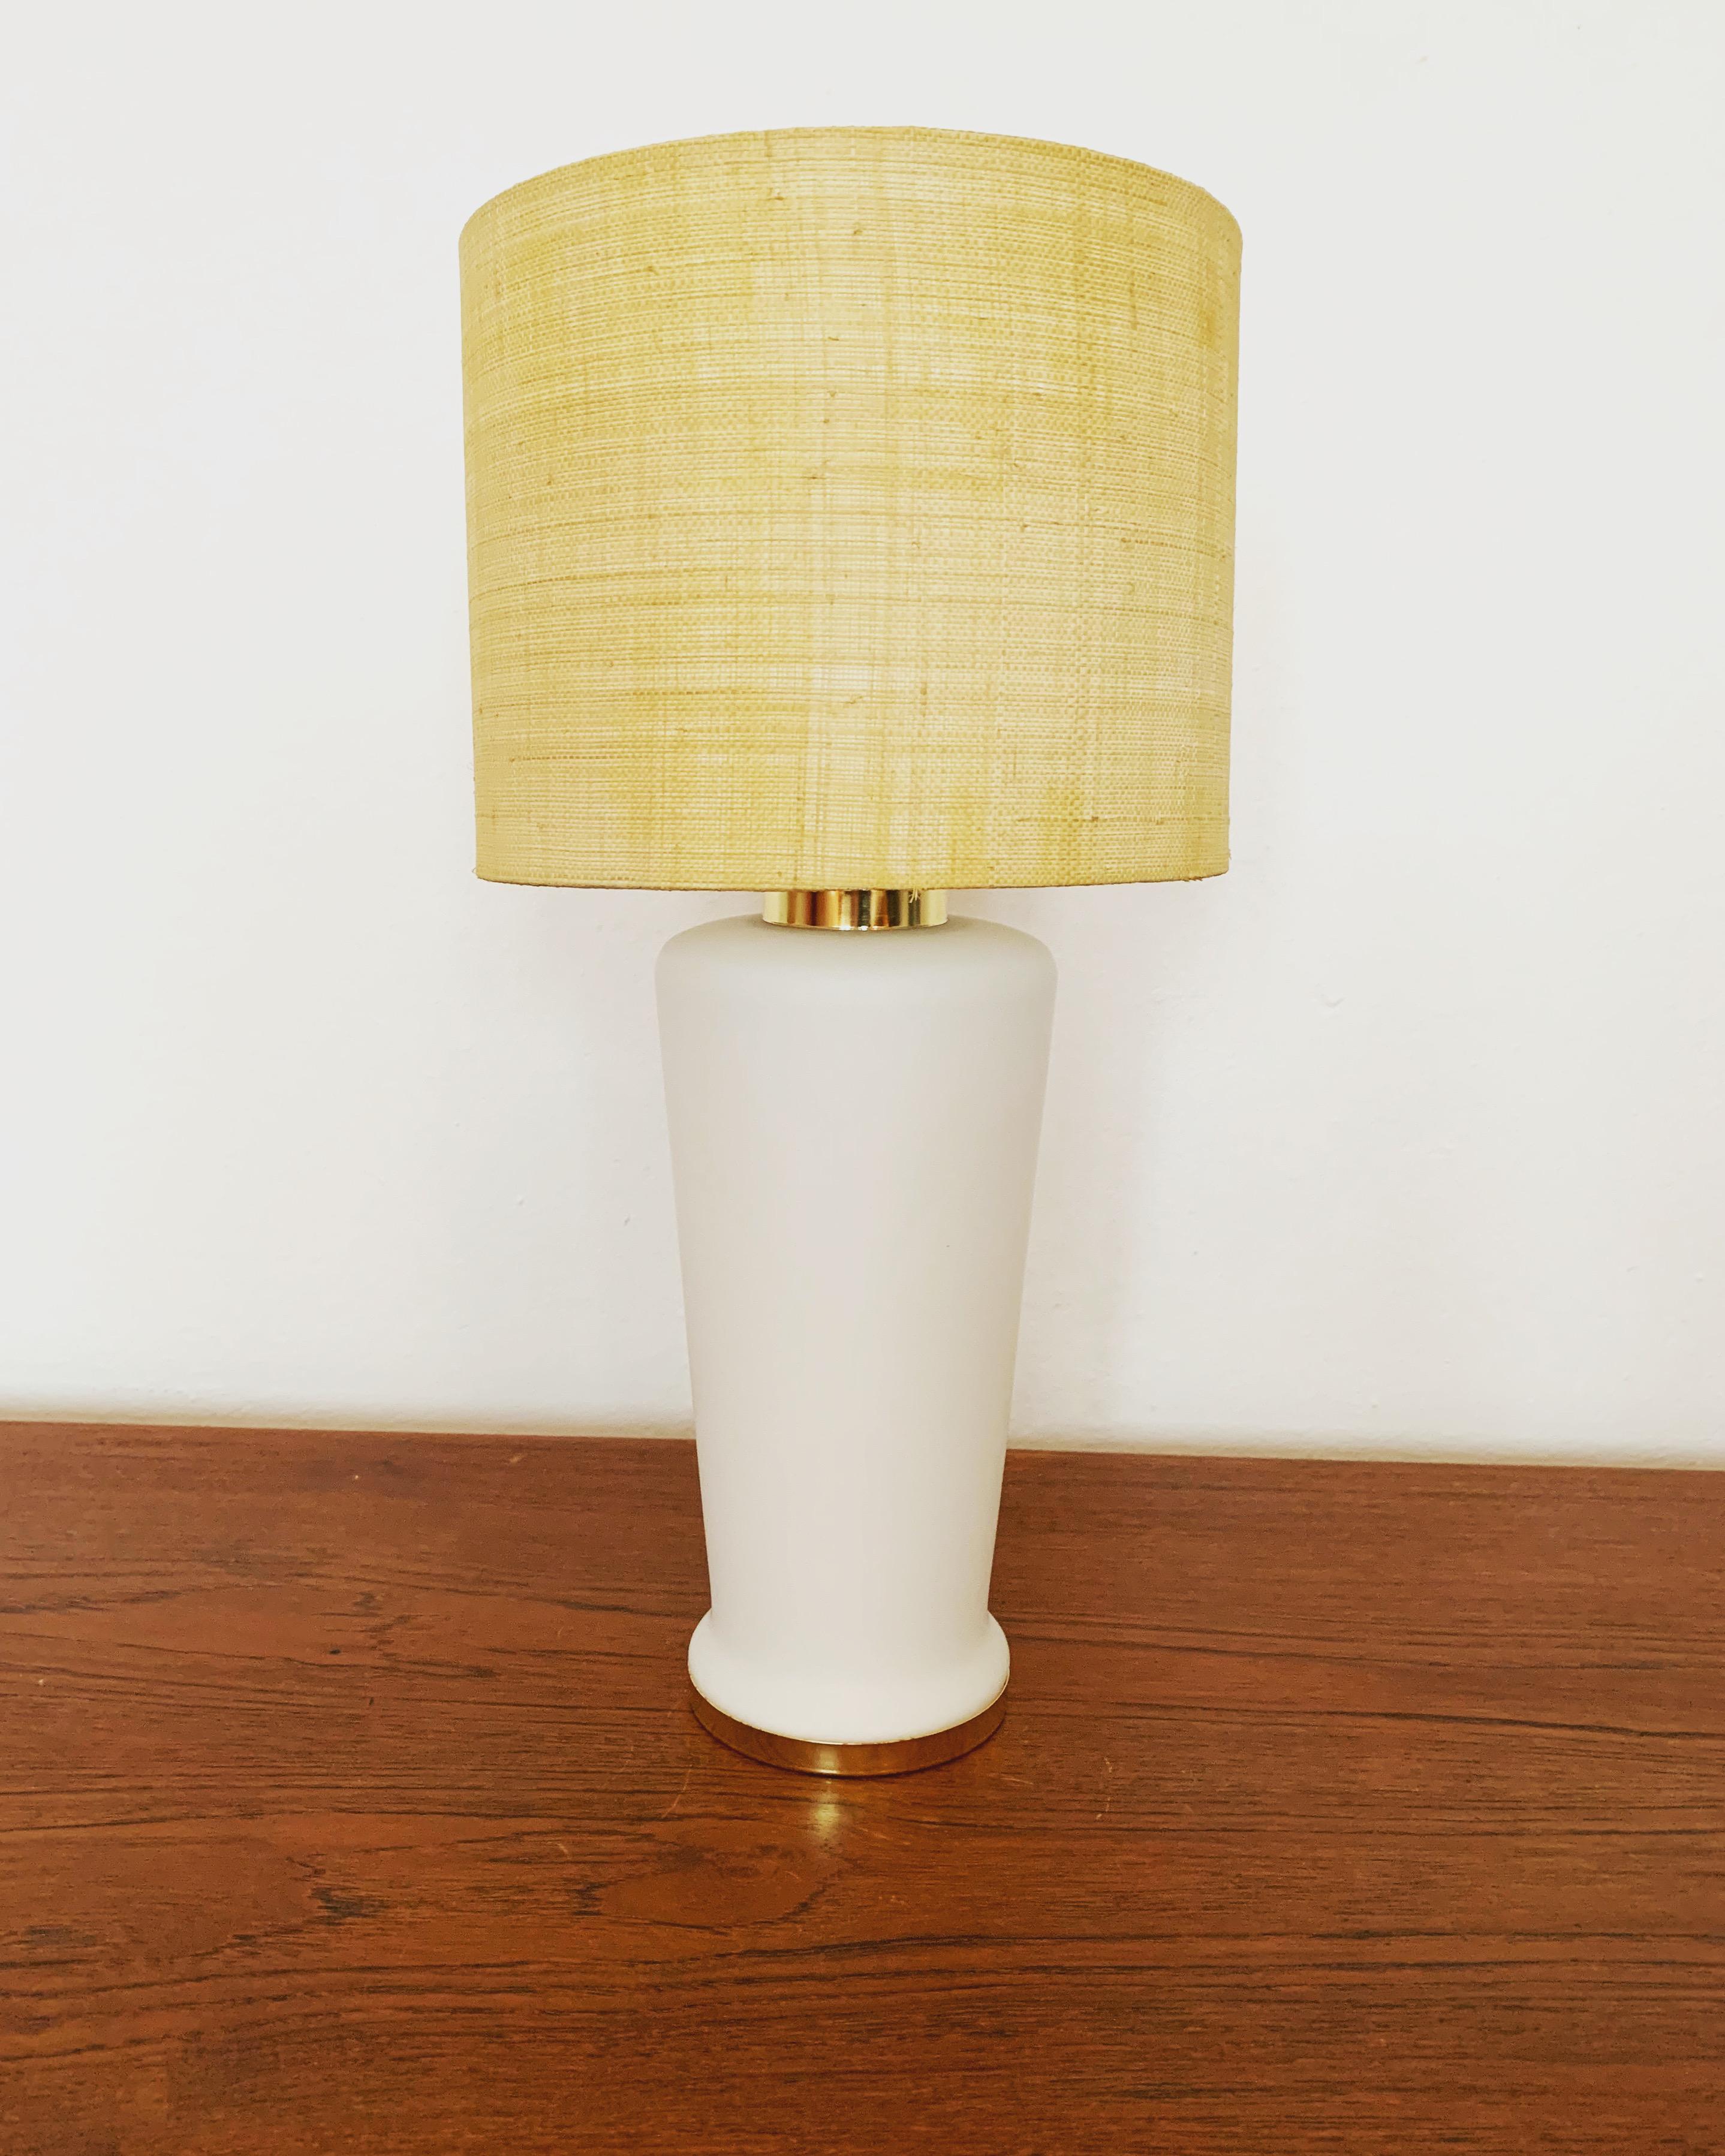 Particulièrement belle lampe de table en verre des années 1960.
La lampe est équipée d'une douille à commutation séparée dans la base de la lampe.
Une ambiance lumineuse très agréable est créée.

Les photos font partie de la description.

Si vous